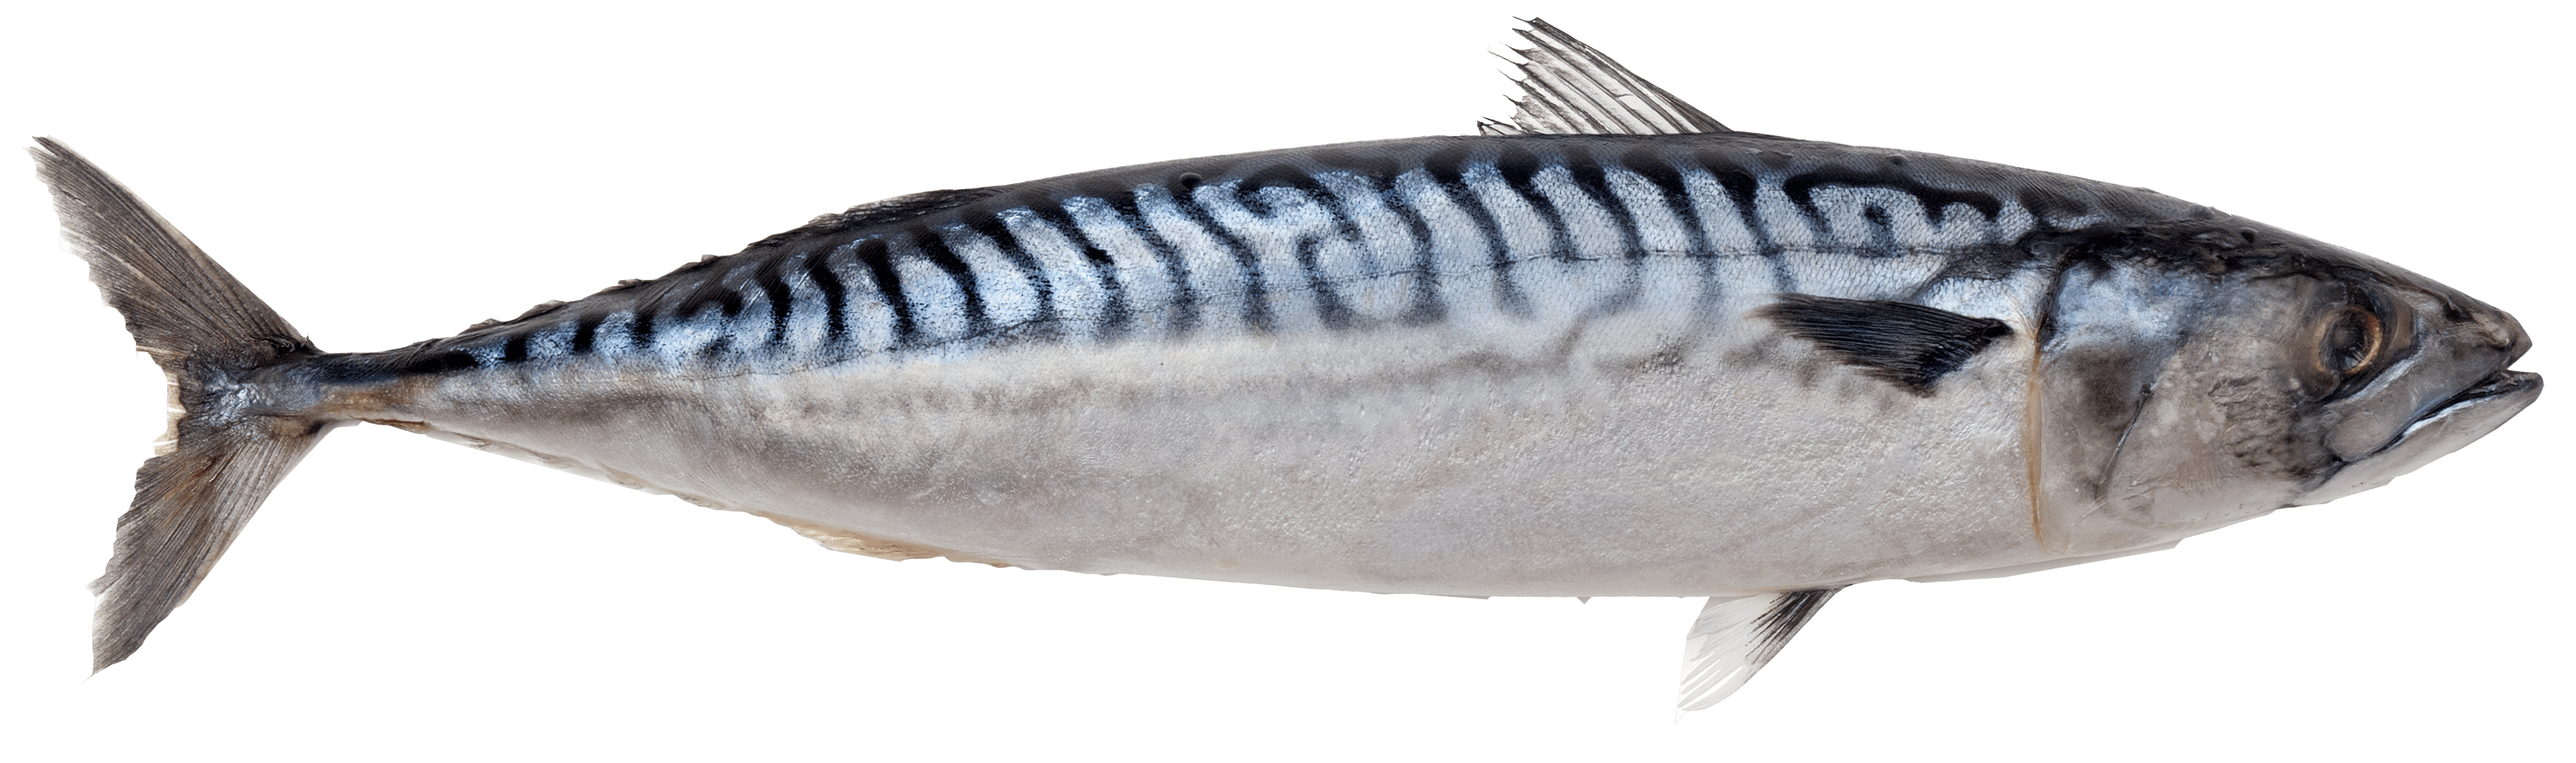 Scomber scombrus Atlantic mackerel